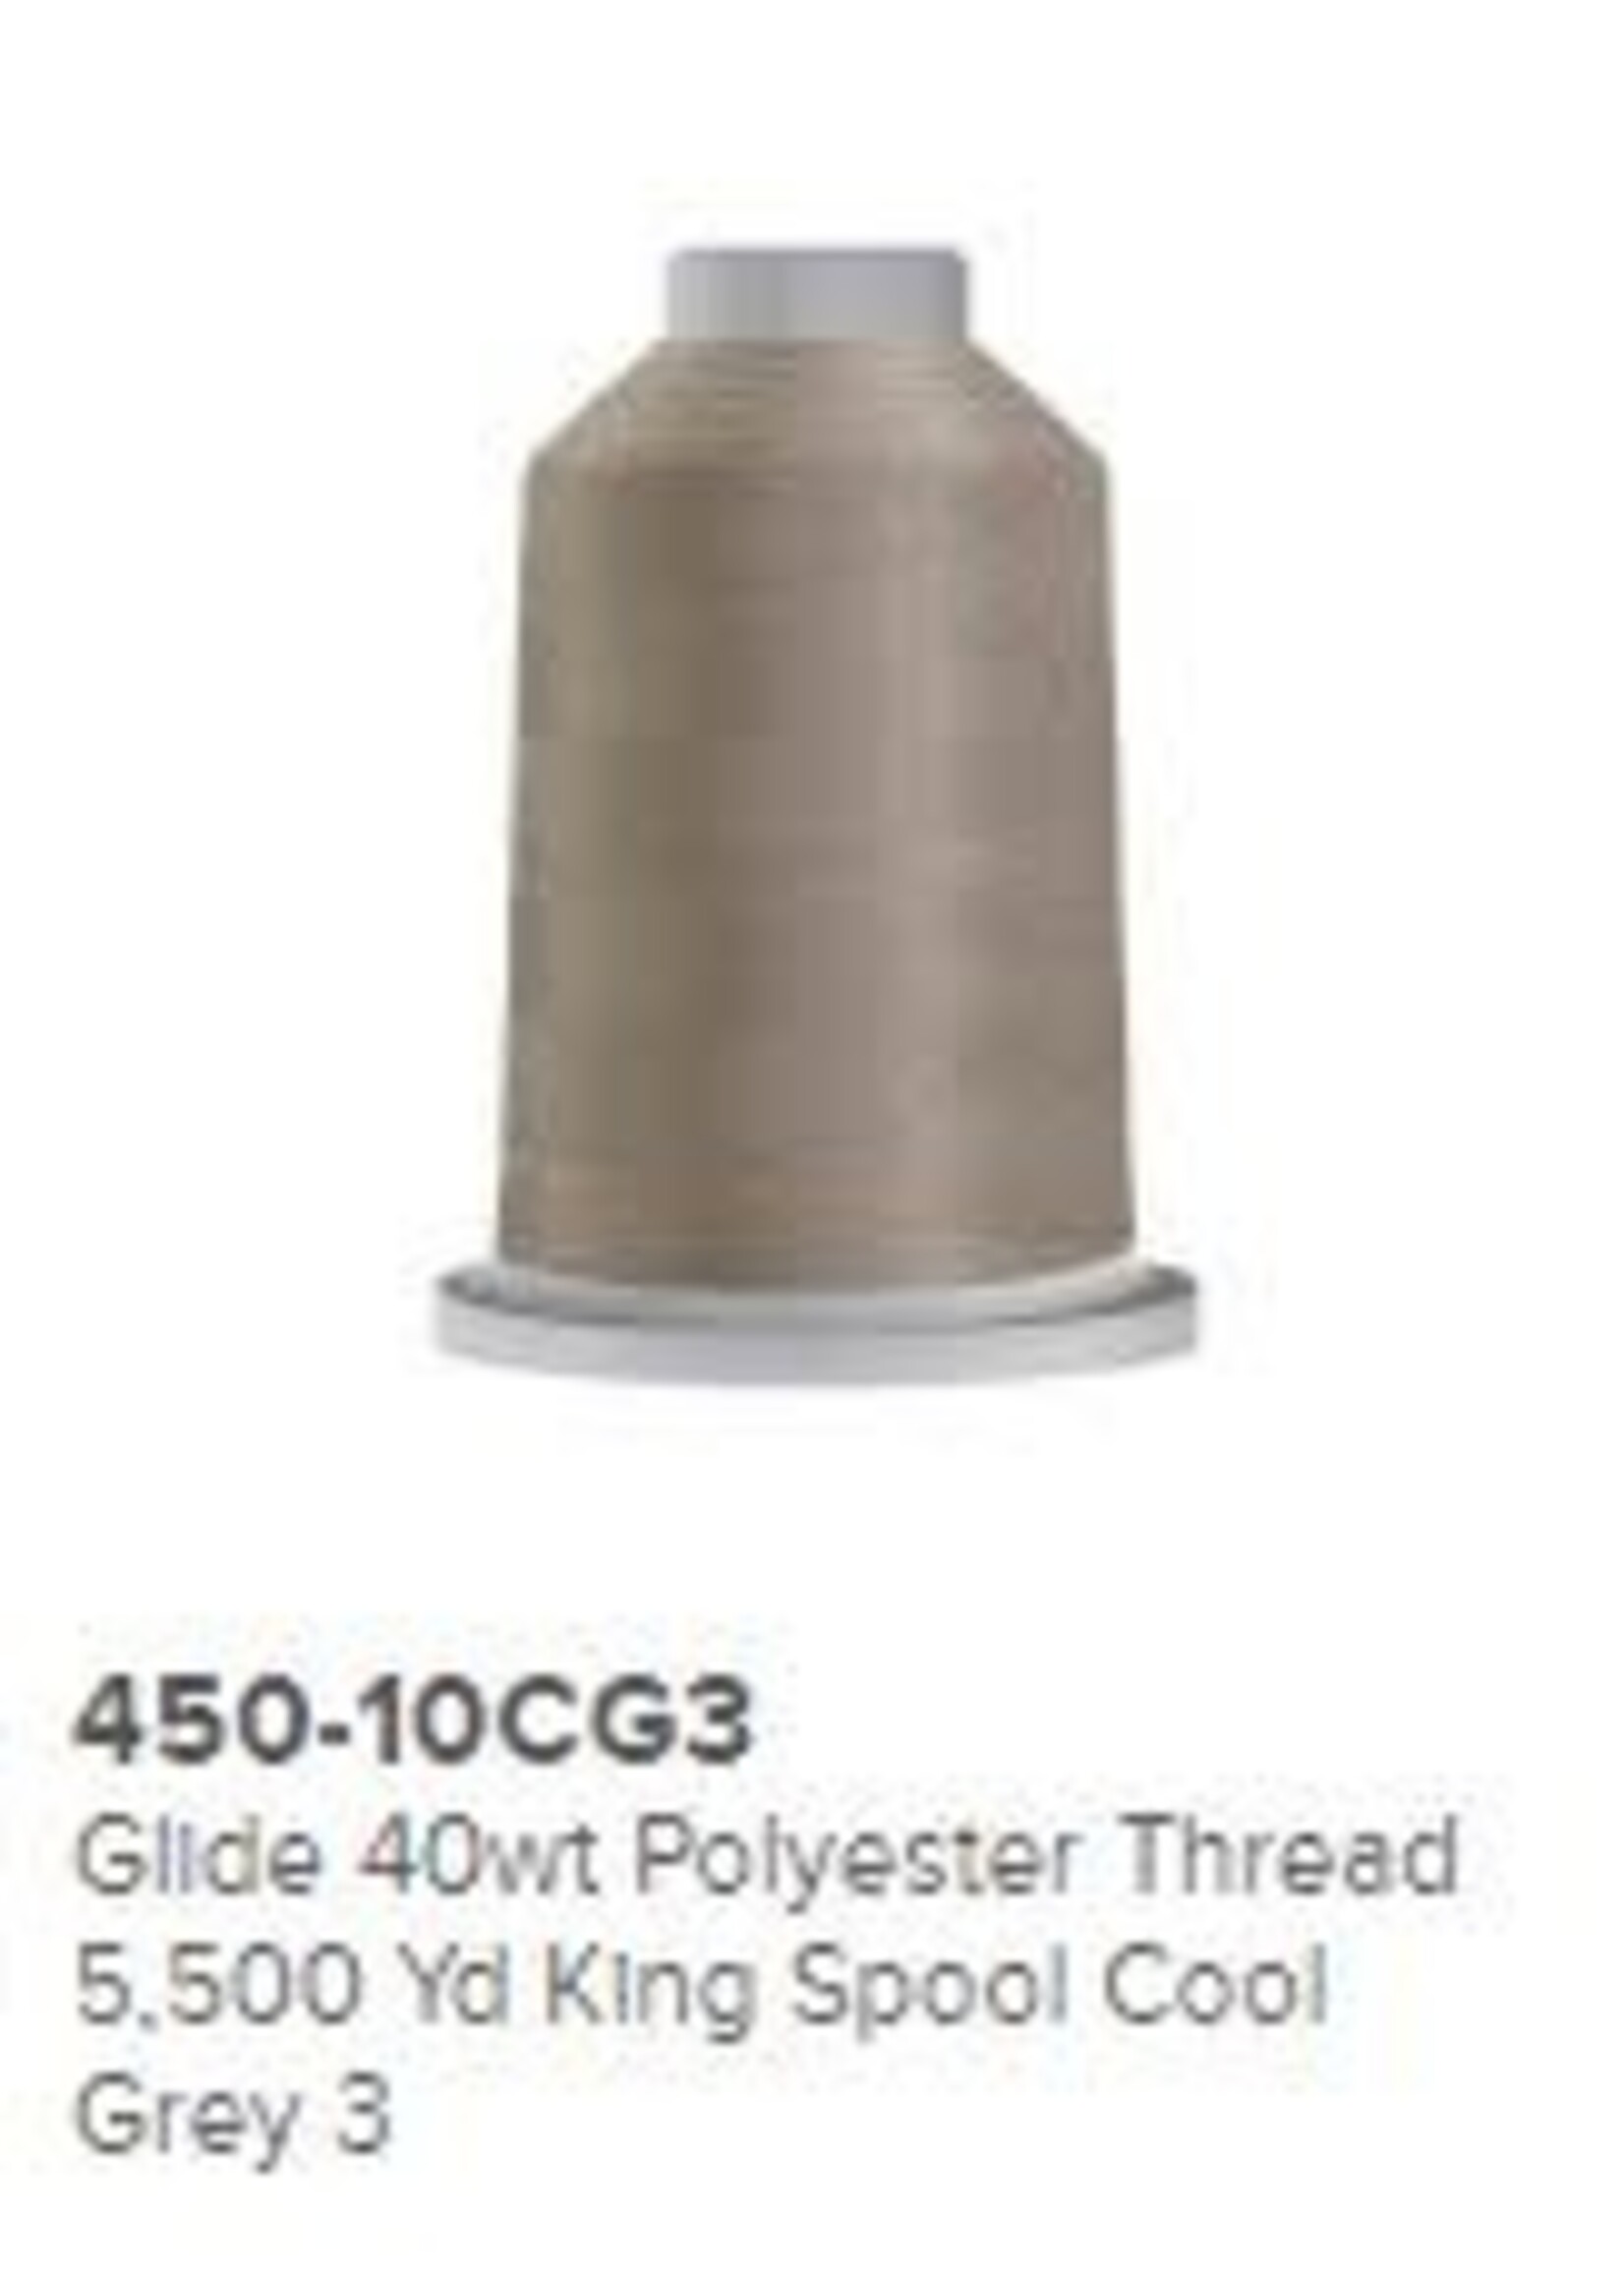 Glide Glide 40wt Polyester Thread 5,500 yd King Spool Cool Grey 3 # 450-10CG3